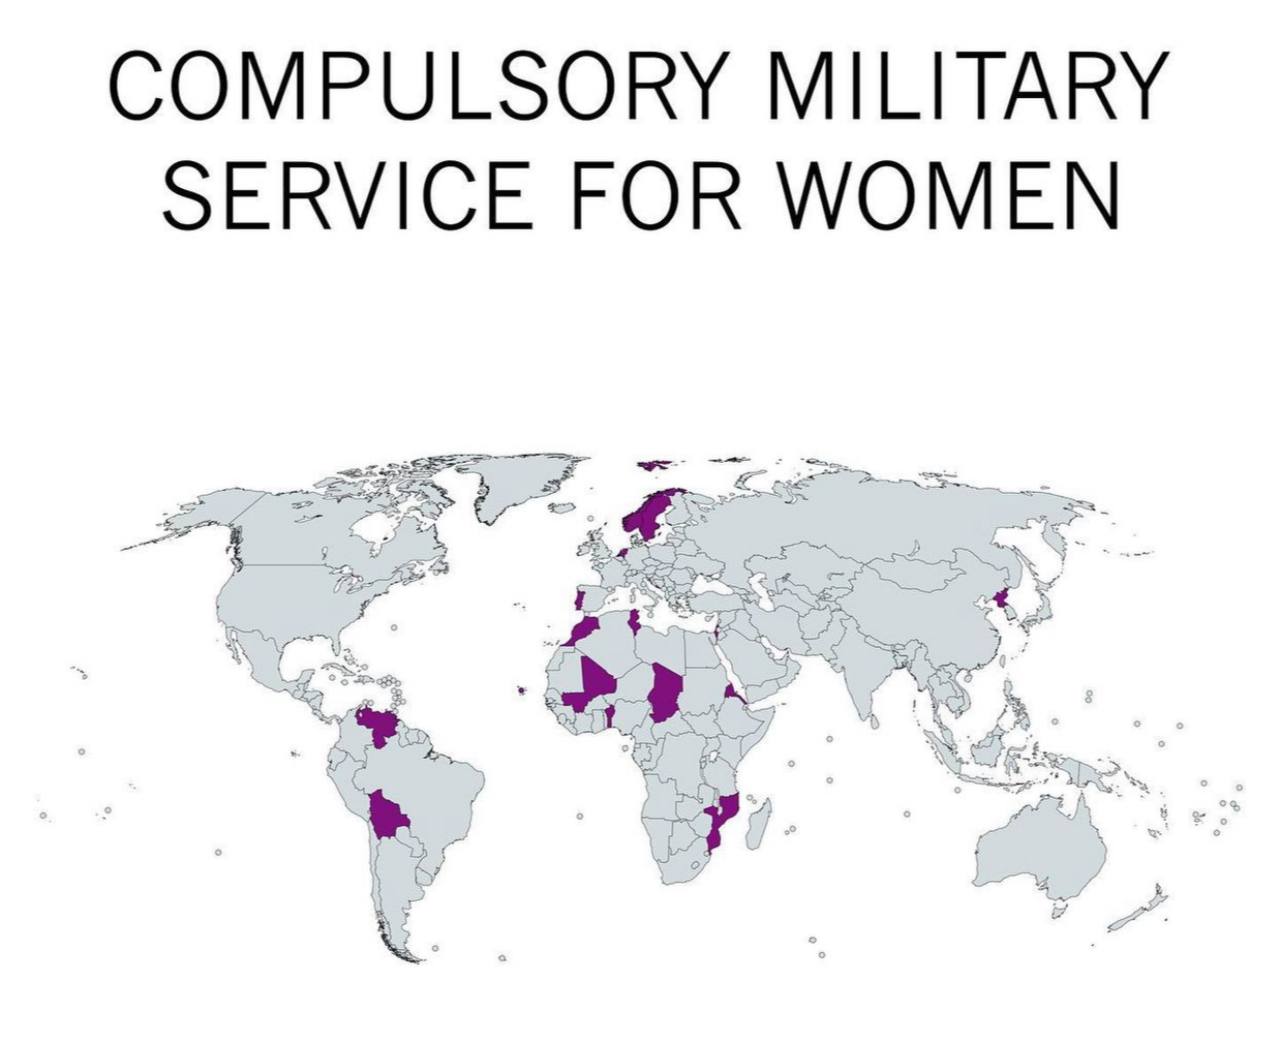 Obowiązkowy pobór do wojska (służba wojskowa) kobiet według kraju